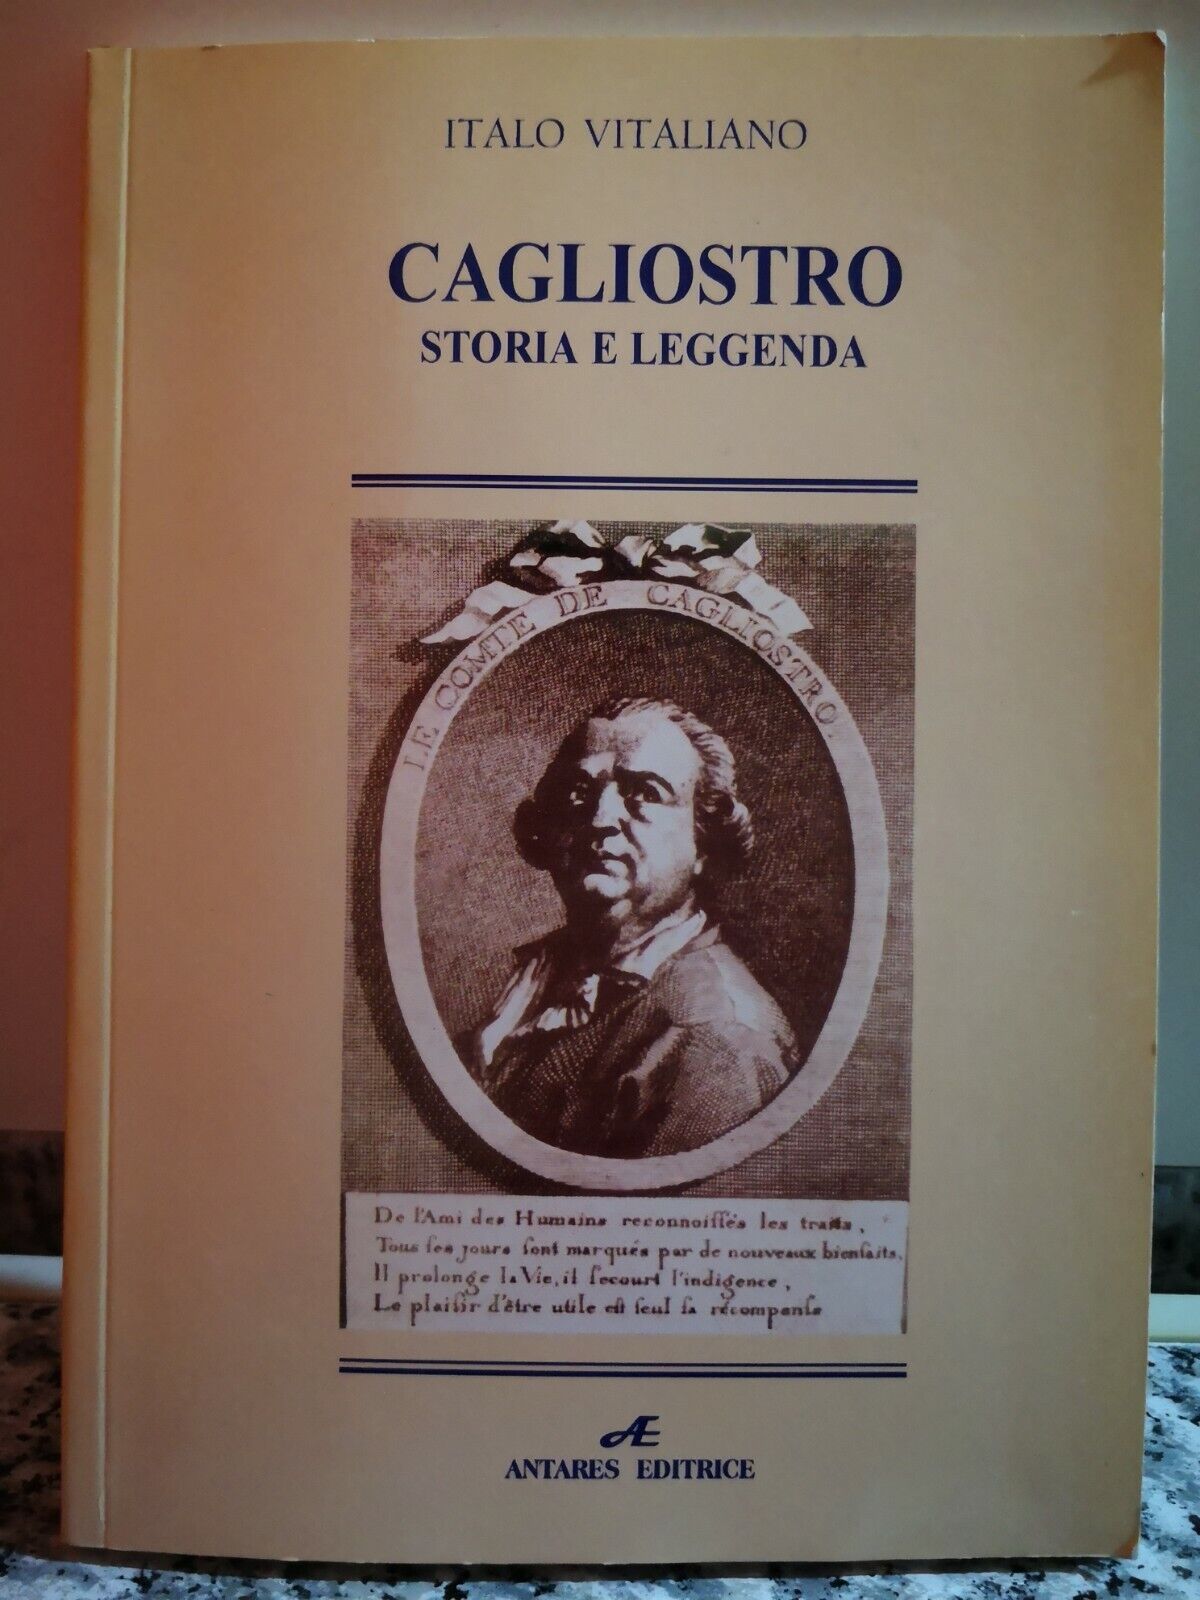  Cagliostro (storia e leggenda )  di Italo Vitaliano,  2003,  Antares-F